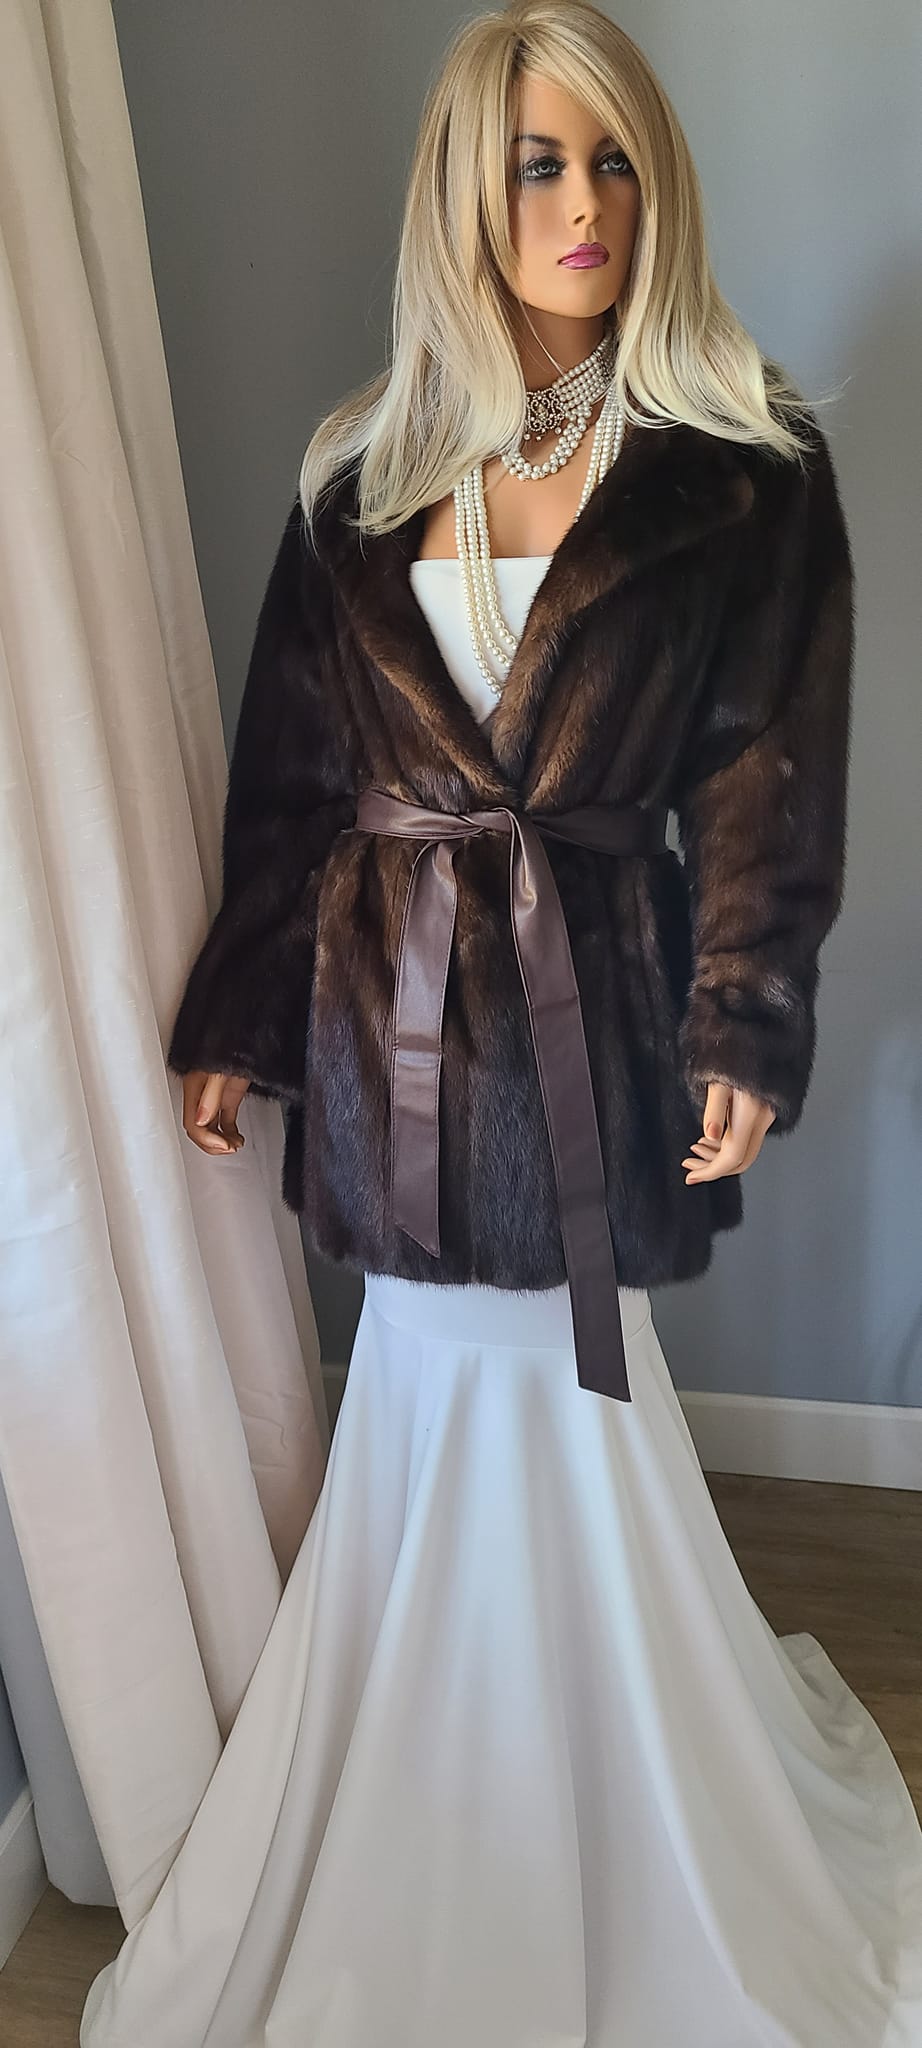 Luxury Vintage FOX Fur Jacket, REAL Fur Coat, Ski Resort Wear, ARCTIC Fox  Fur Stroller, Dream Wedding, Winter Bridal Fur, Retro Hollywood Glamour  Fur, Deco Gatsby Party